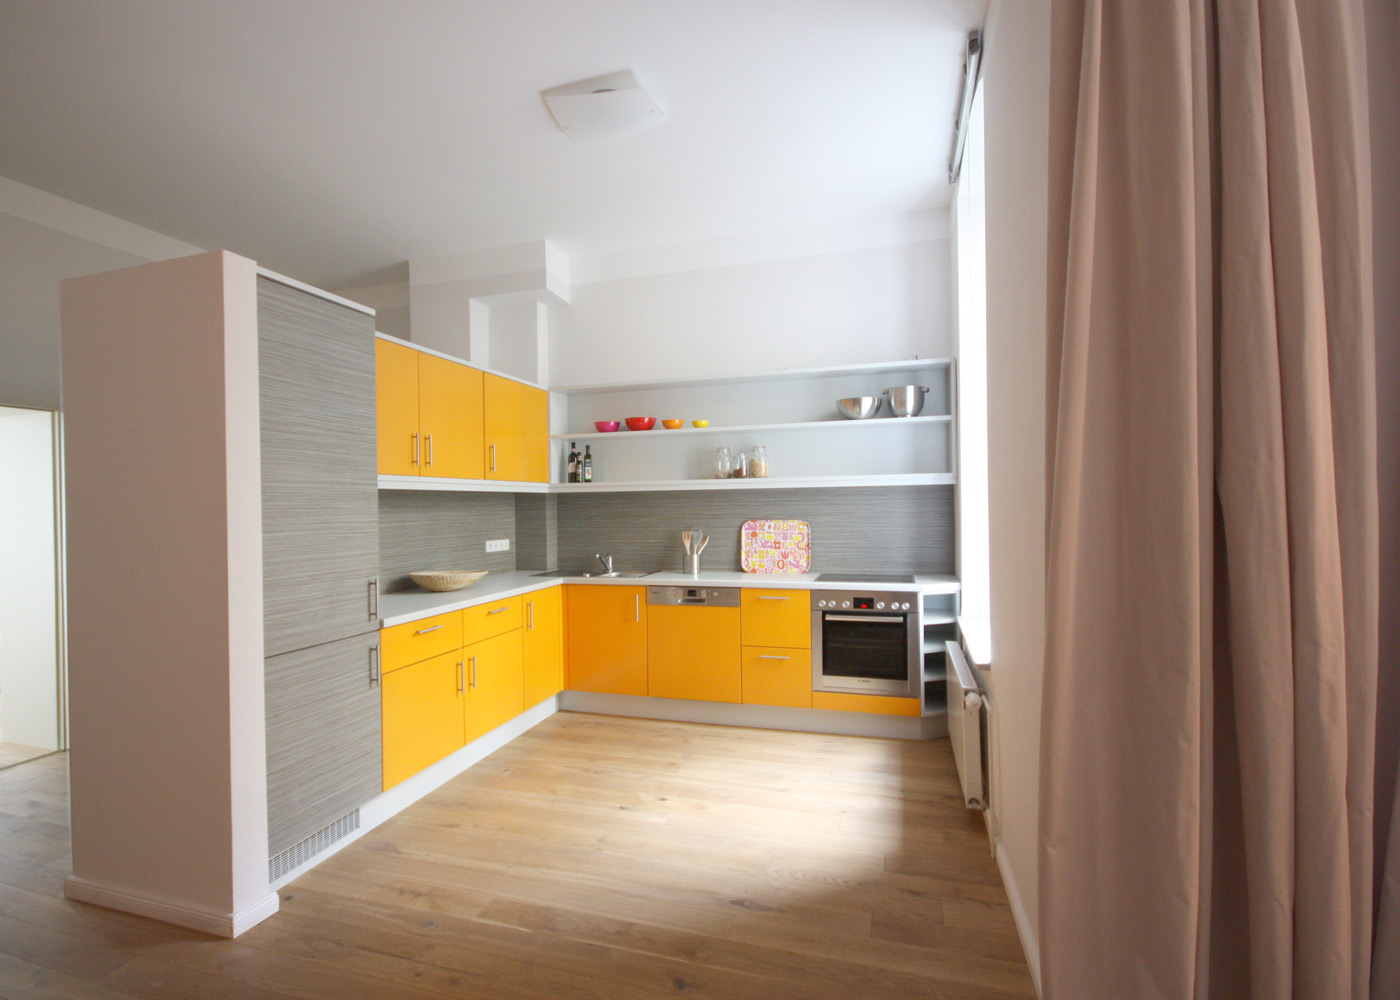 L-förmige Einbauküche mit orangen Fronten. Kühlschranktüren und Rückwandpaneel in strukturiertem Grau.